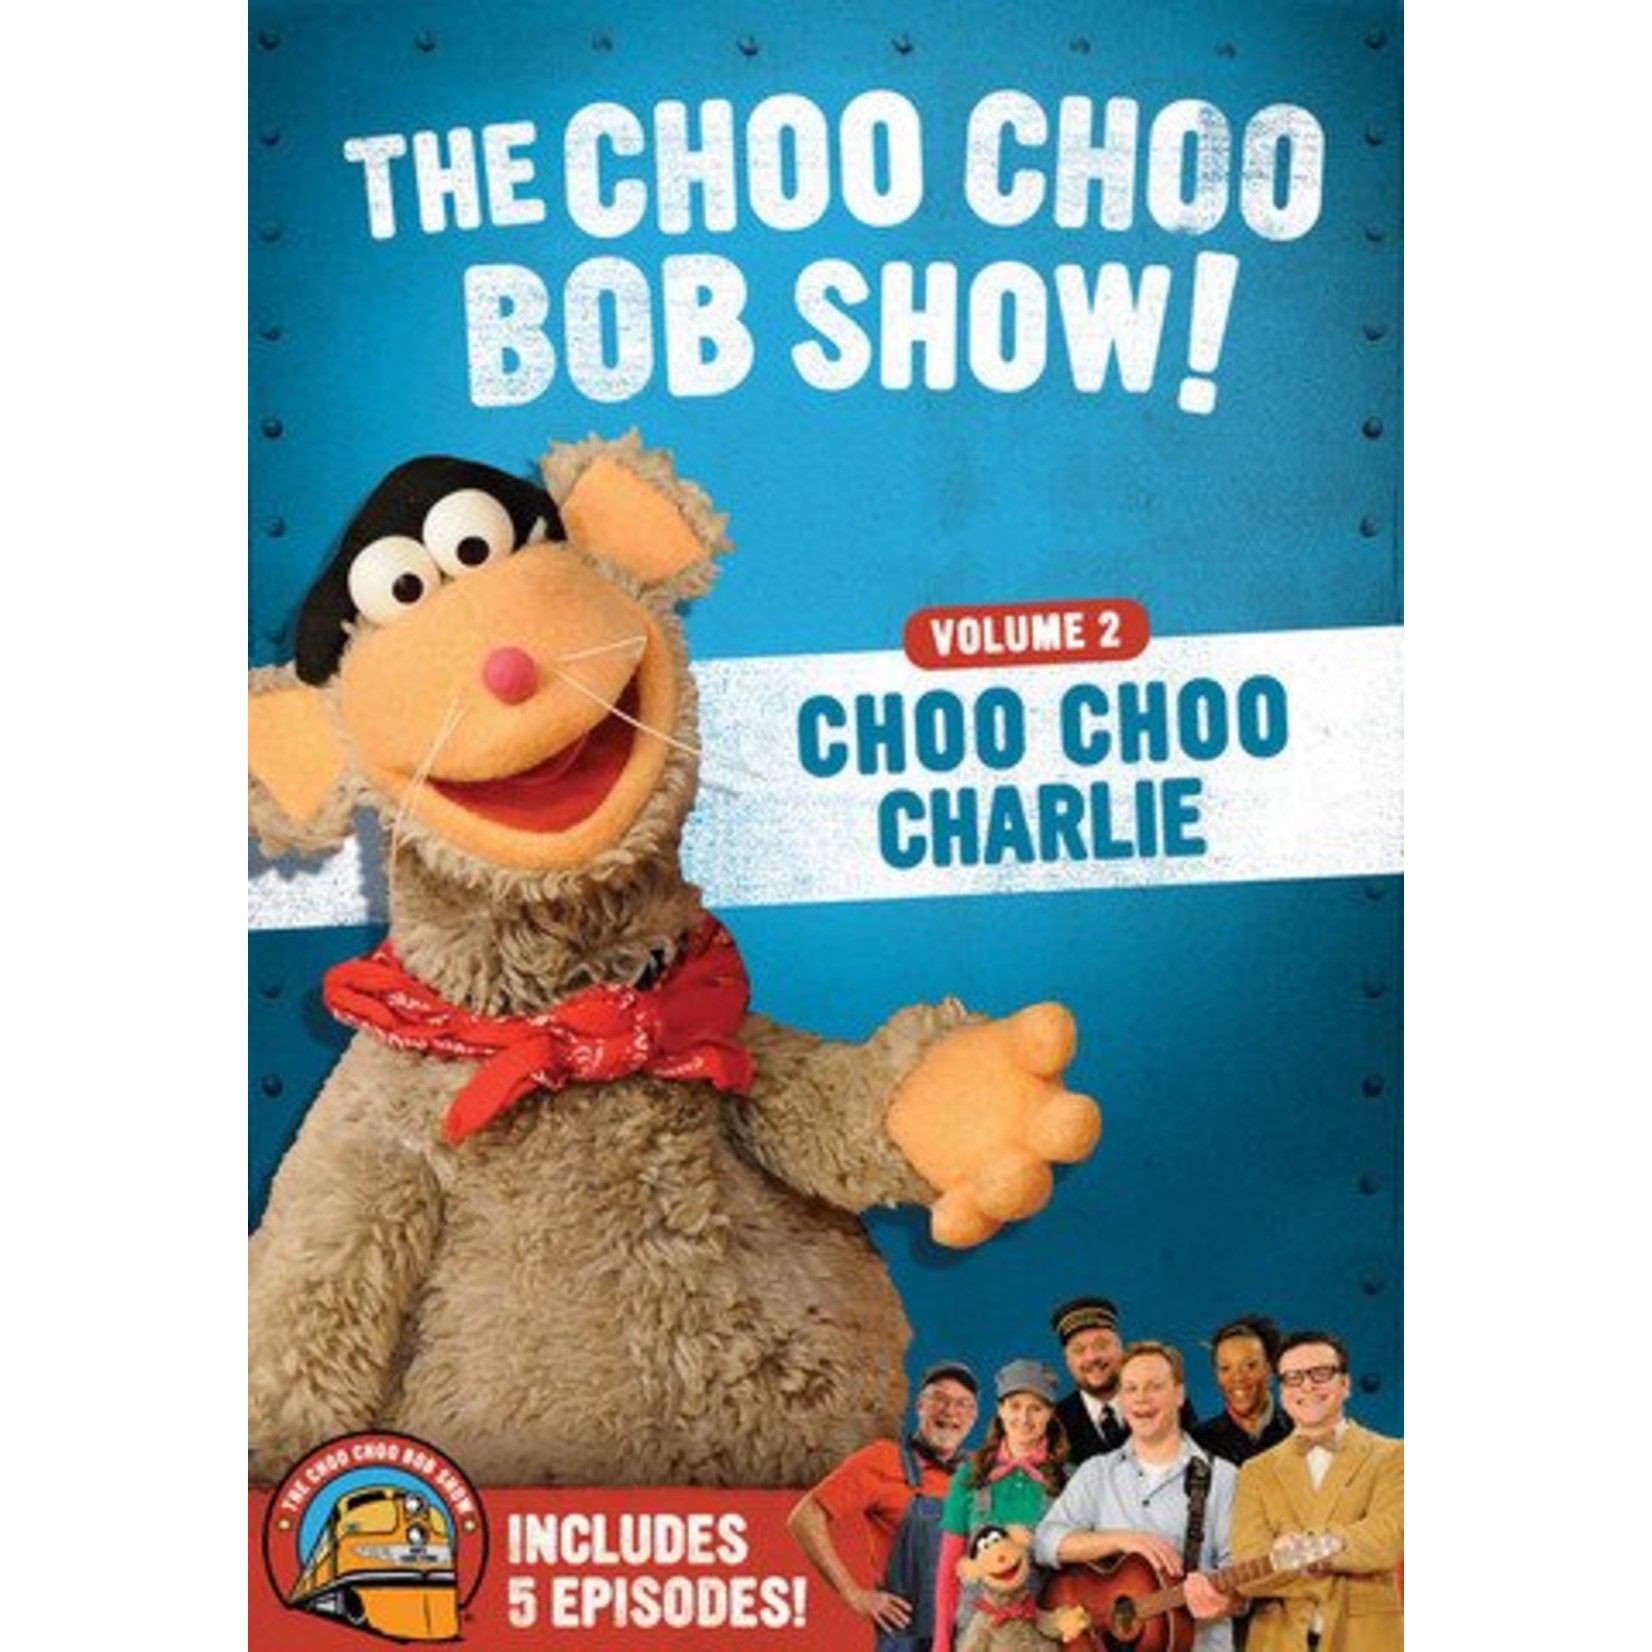 Choo Choo Bob Train Store The Choo Choo Bob Show! V2 Choo Choo Charlie